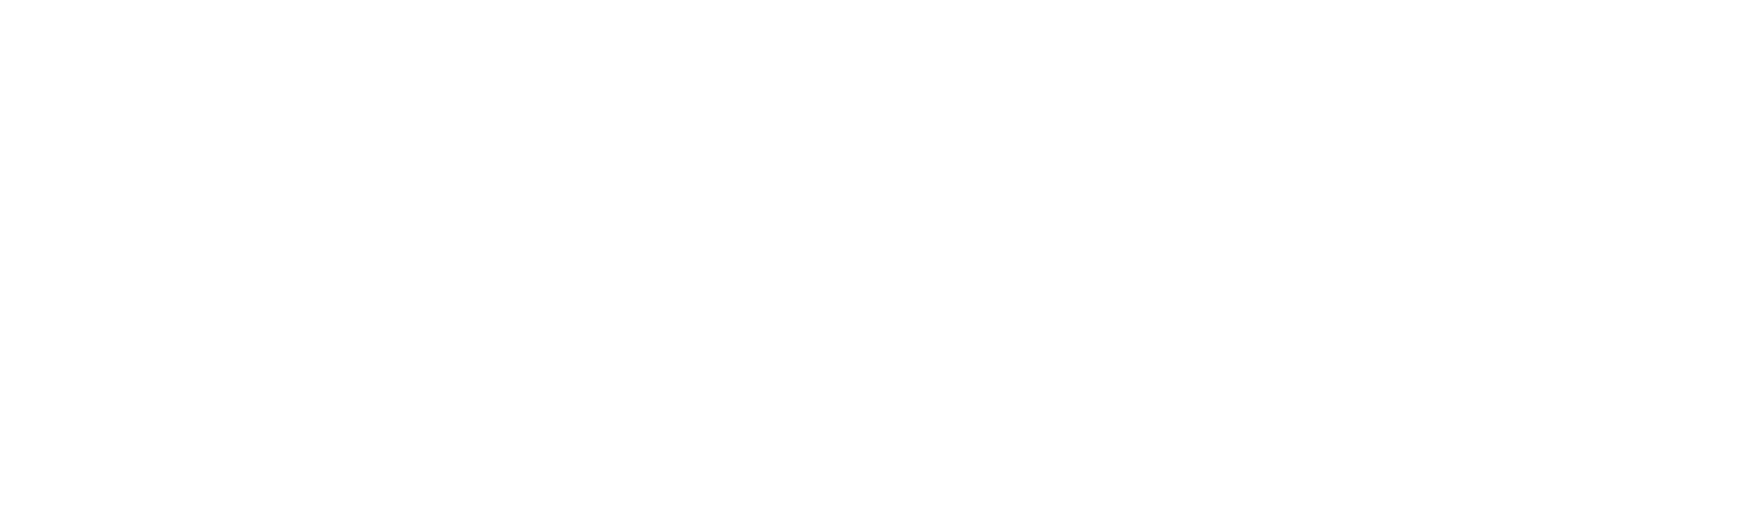 E elementonan di HERENCIA 2023 ta honra nos ‘ra z’, di e pinturanan di amerindionan y tegelnan di e casnan autentico ...